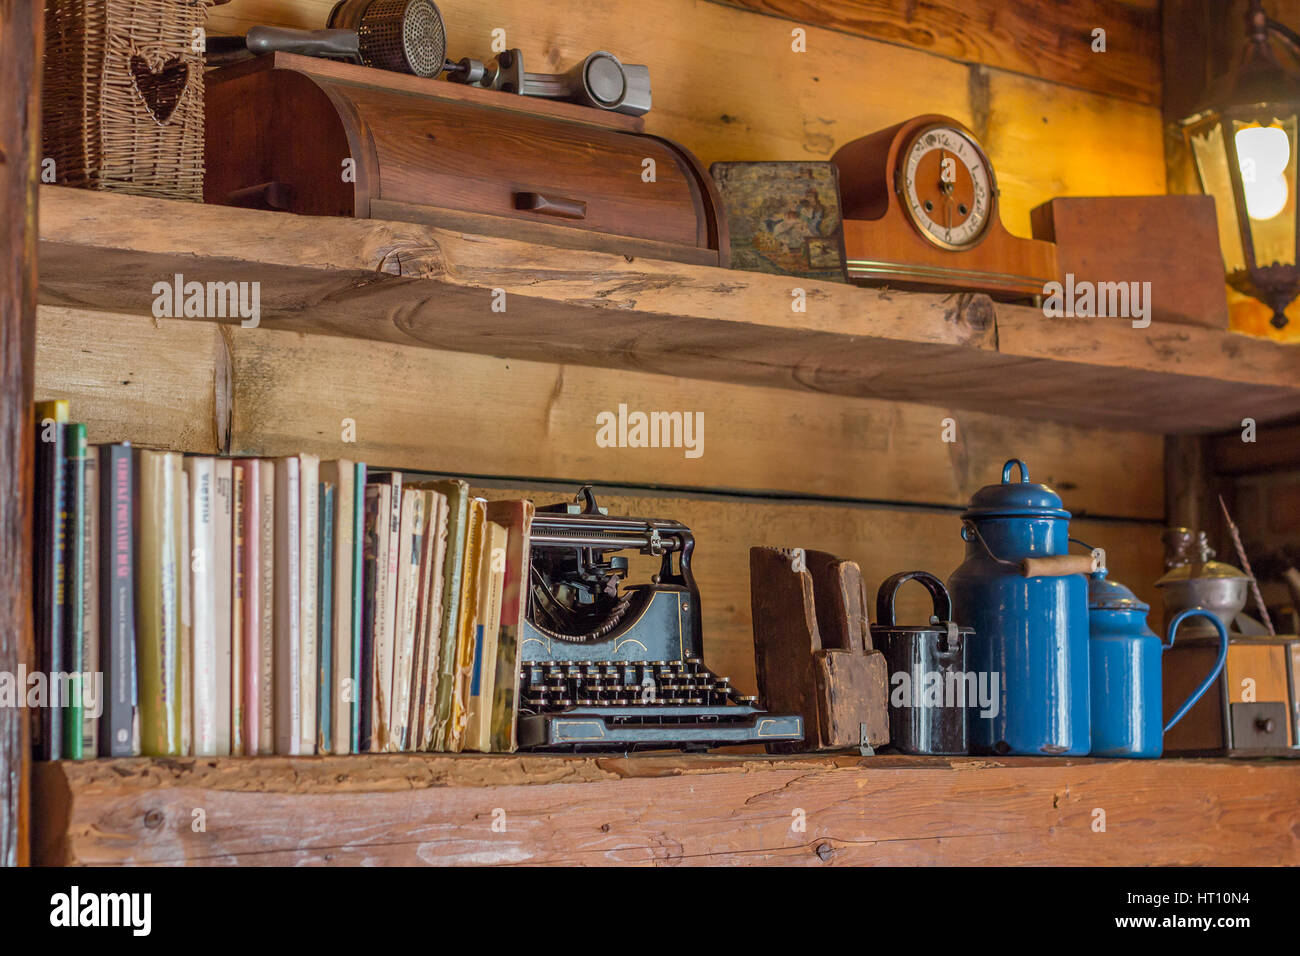 Vista in dettaglio su vecchi scaffali in legno con riviste e antiche macchine da scrivere orologio caraffe e altri oggetti Foto Stock